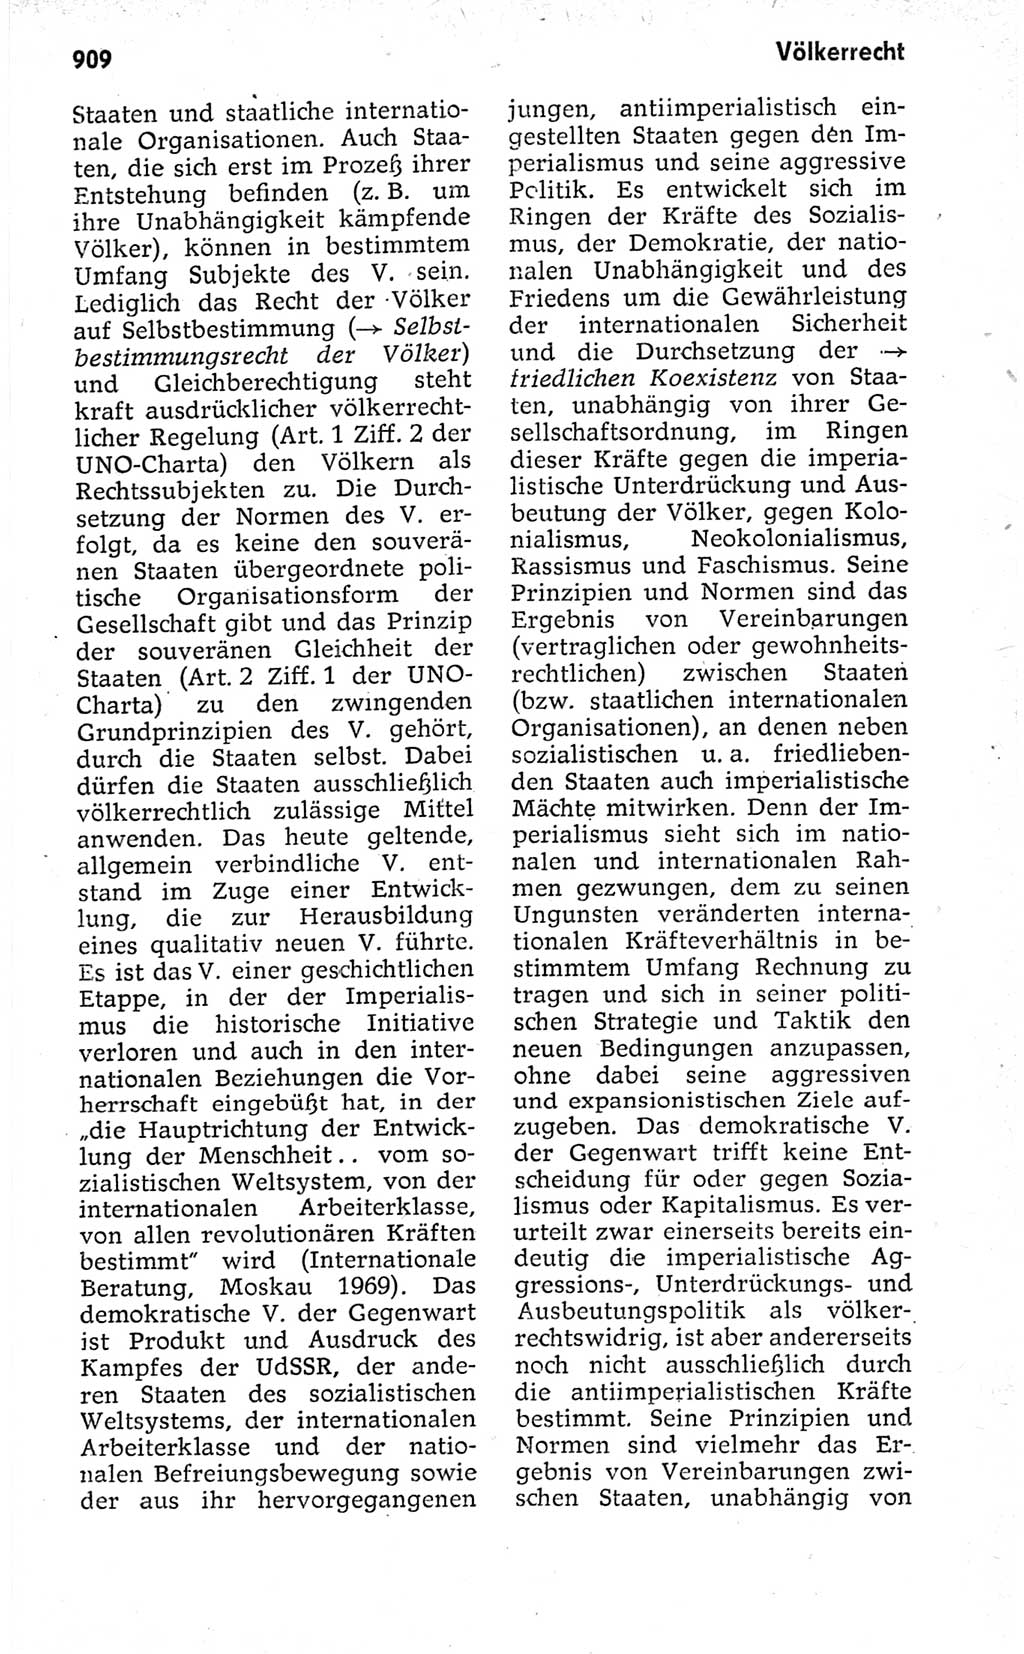 Kleines politisches Wörterbuch [Deutsche Demokratische Republik (DDR)] 1973, Seite 909 (Kl. pol. Wb. DDR 1973, S. 909)